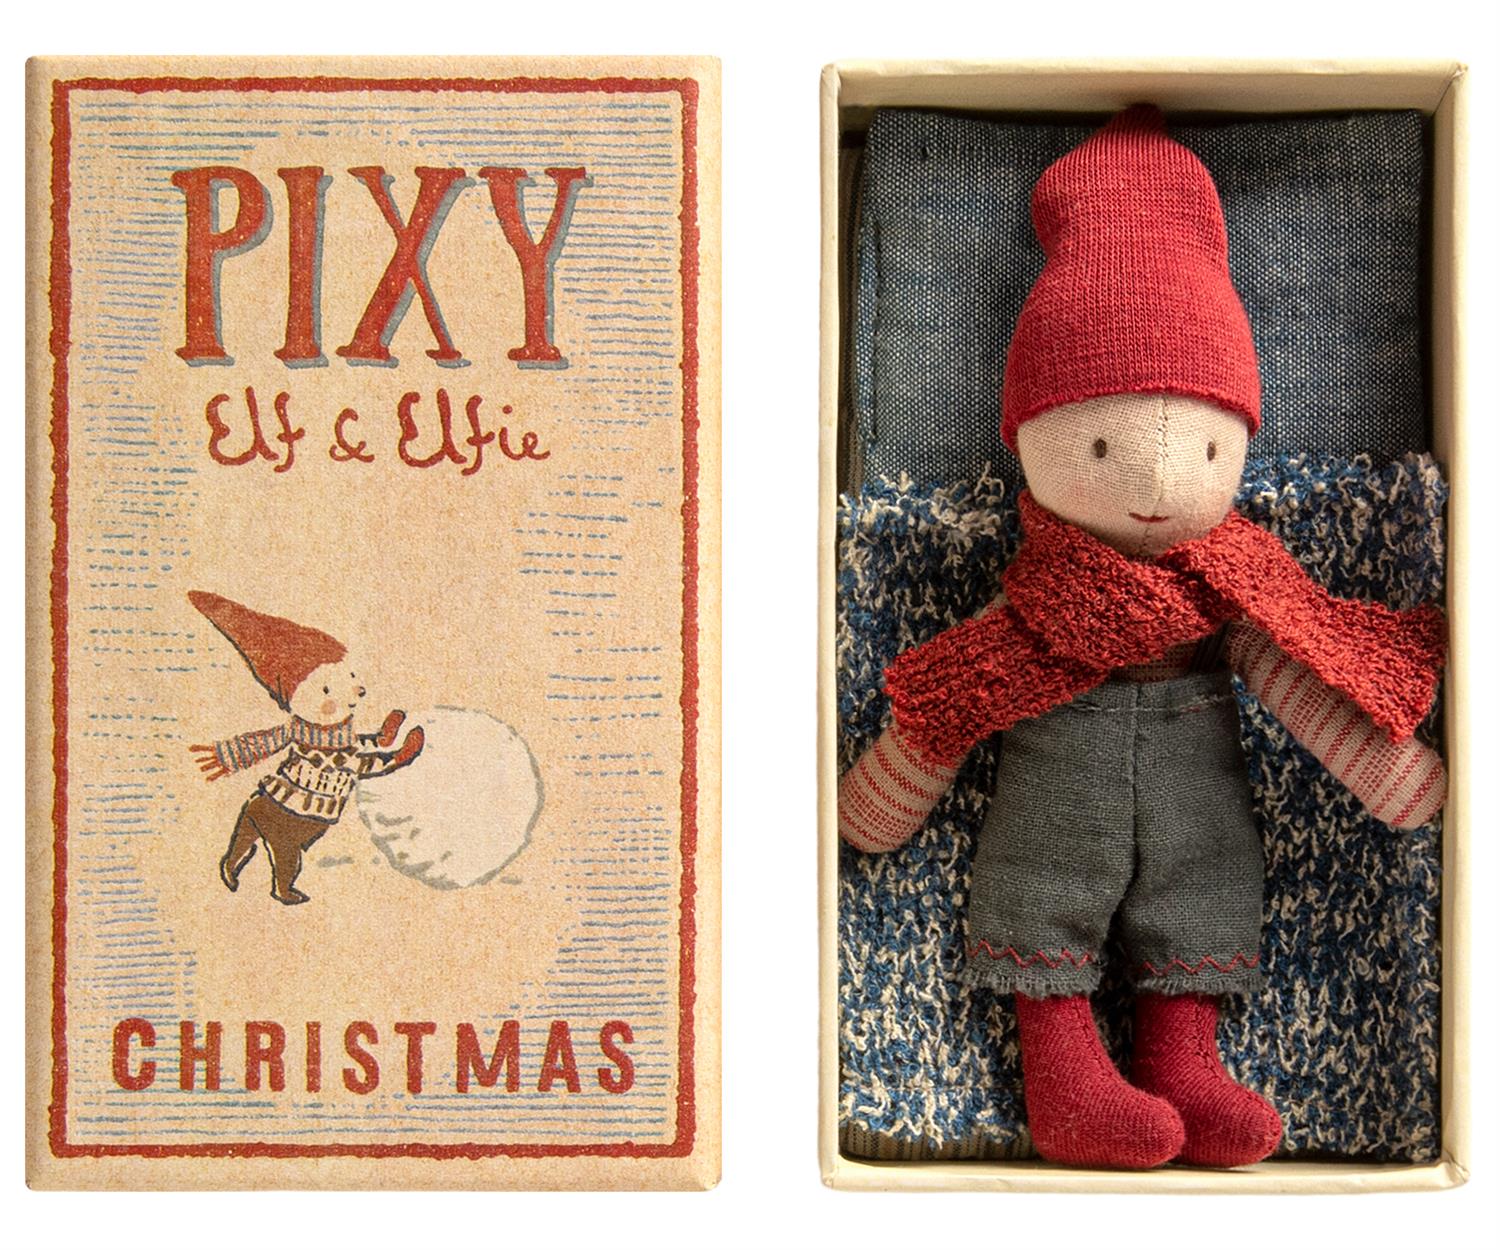 MAILEG Pixy Elf in box